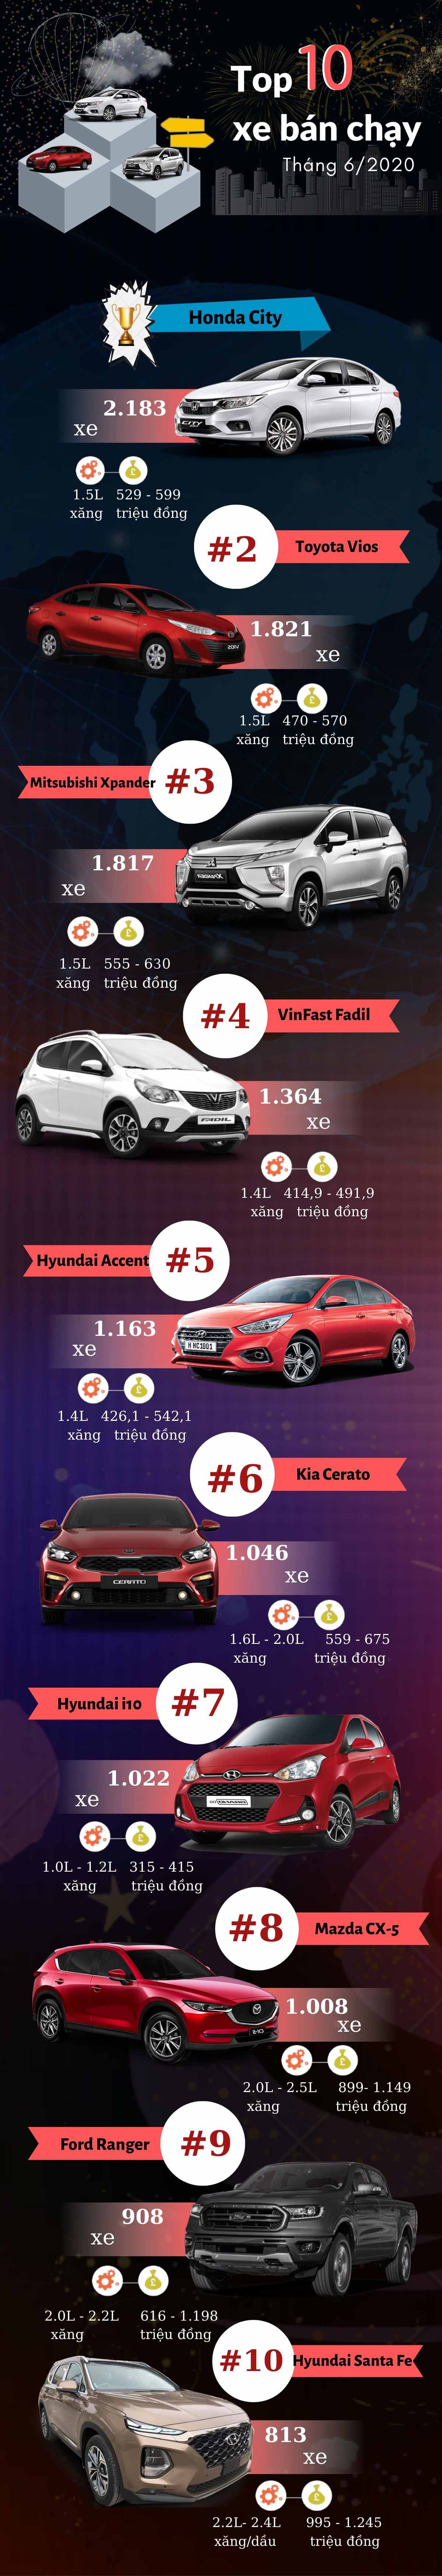 Top 10 mẫu xe bán chạy nhất tháng 6/2020.